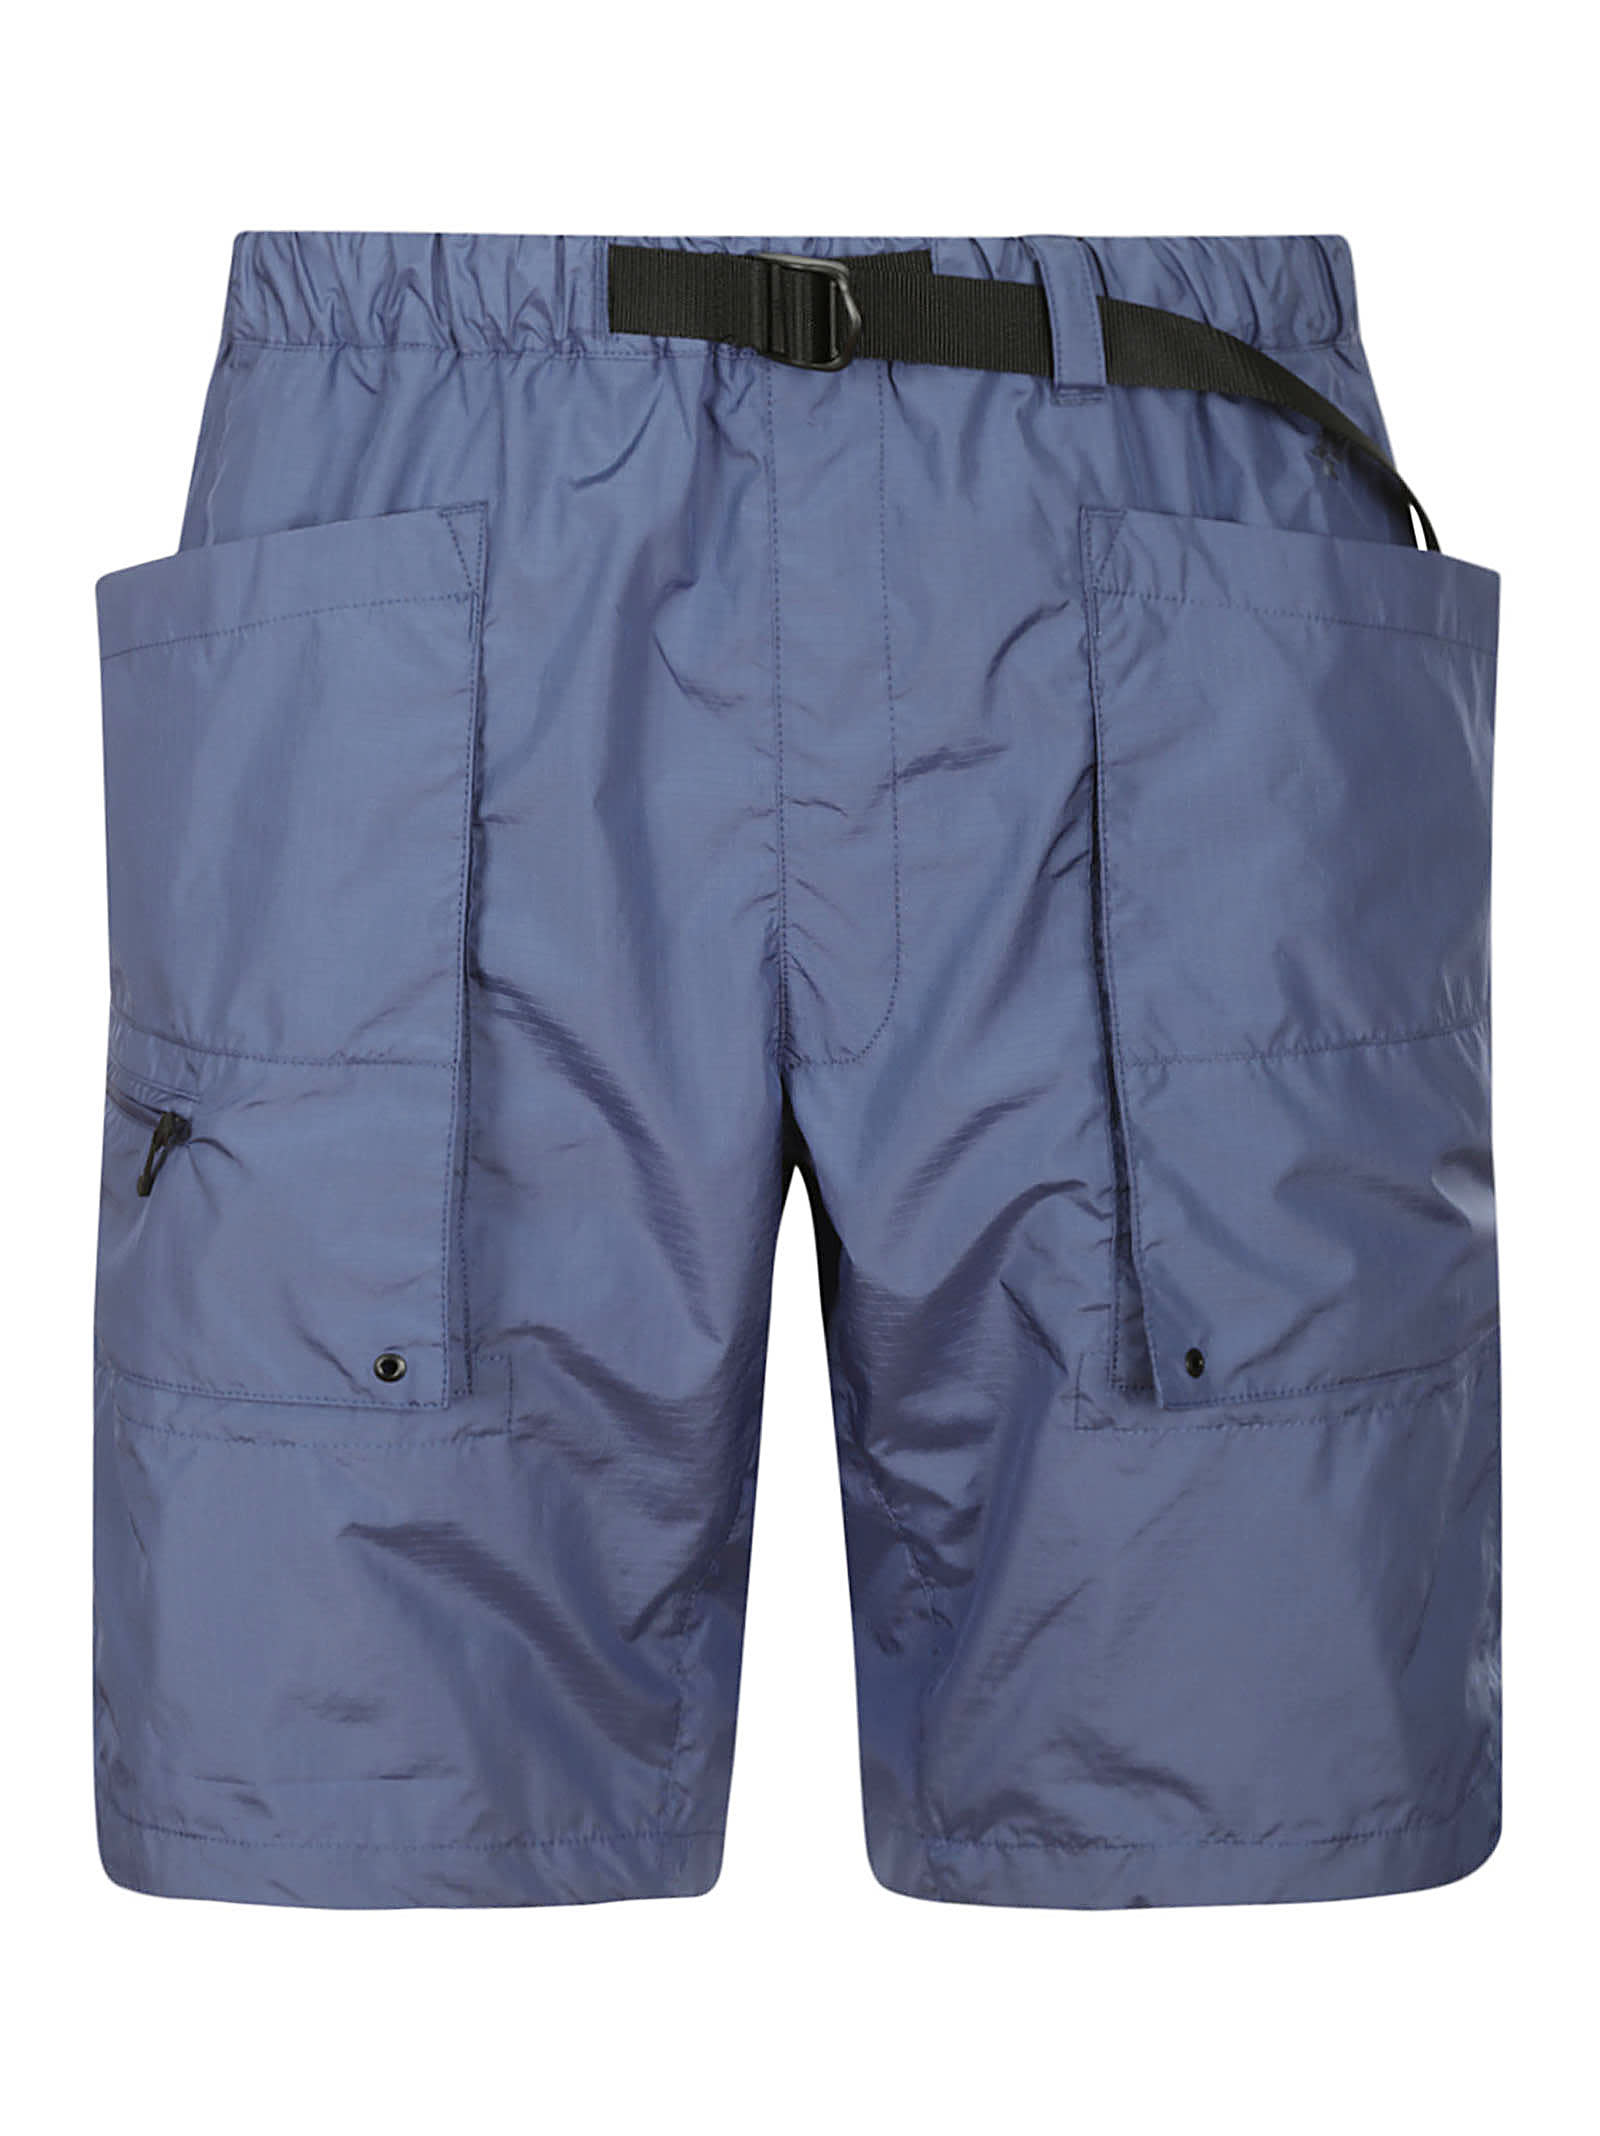 Goldwin Ripstop Cargo Shorts In Hb Horizon Blue